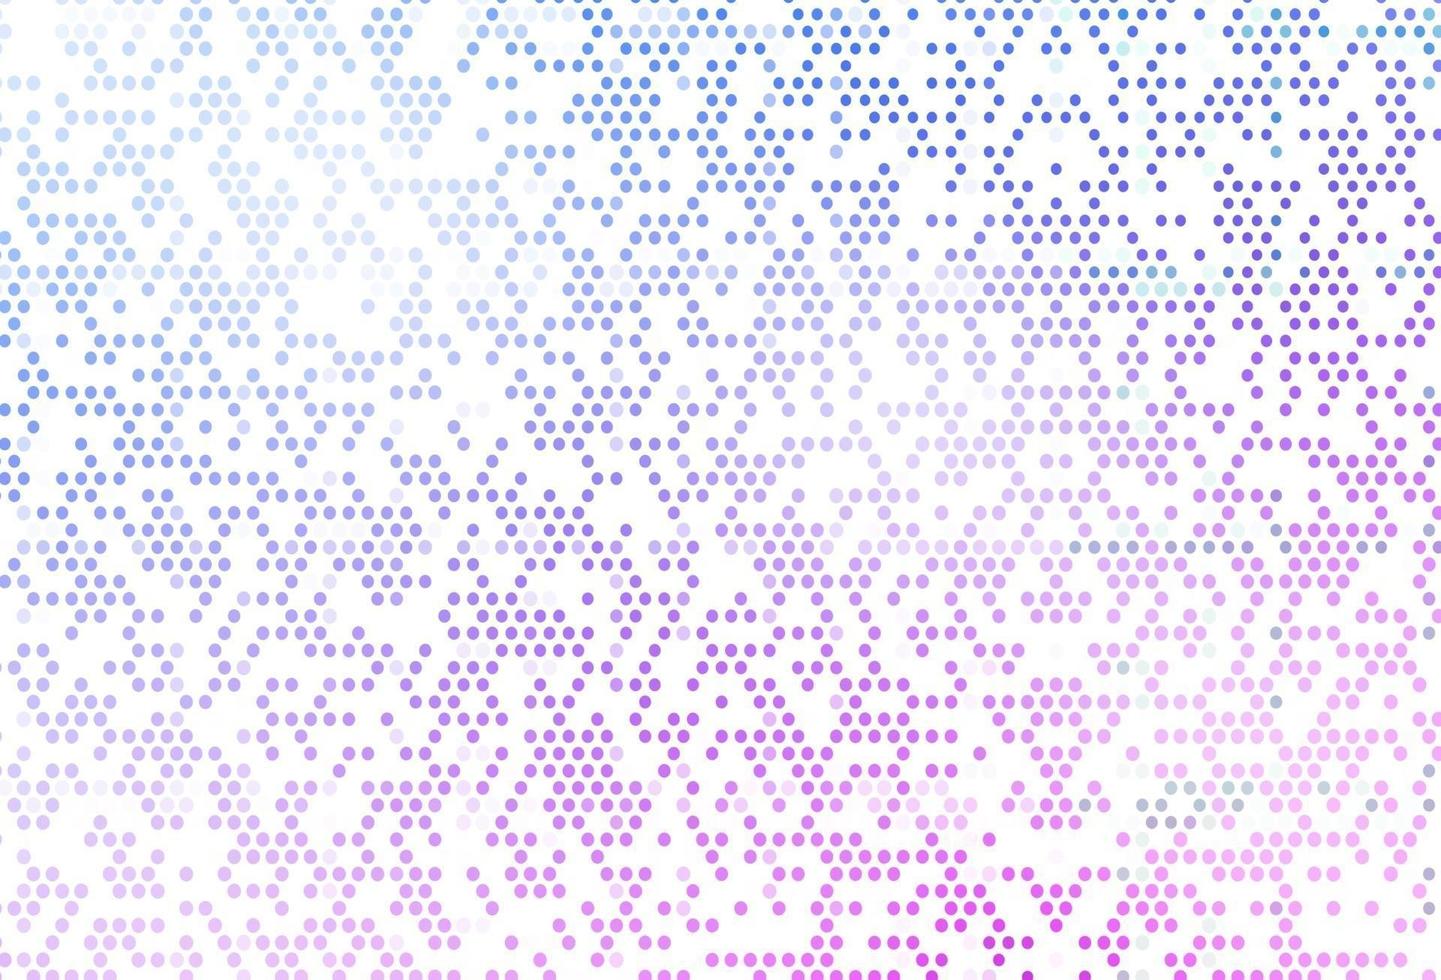 patrón de vector rosa claro, azul con esferas.